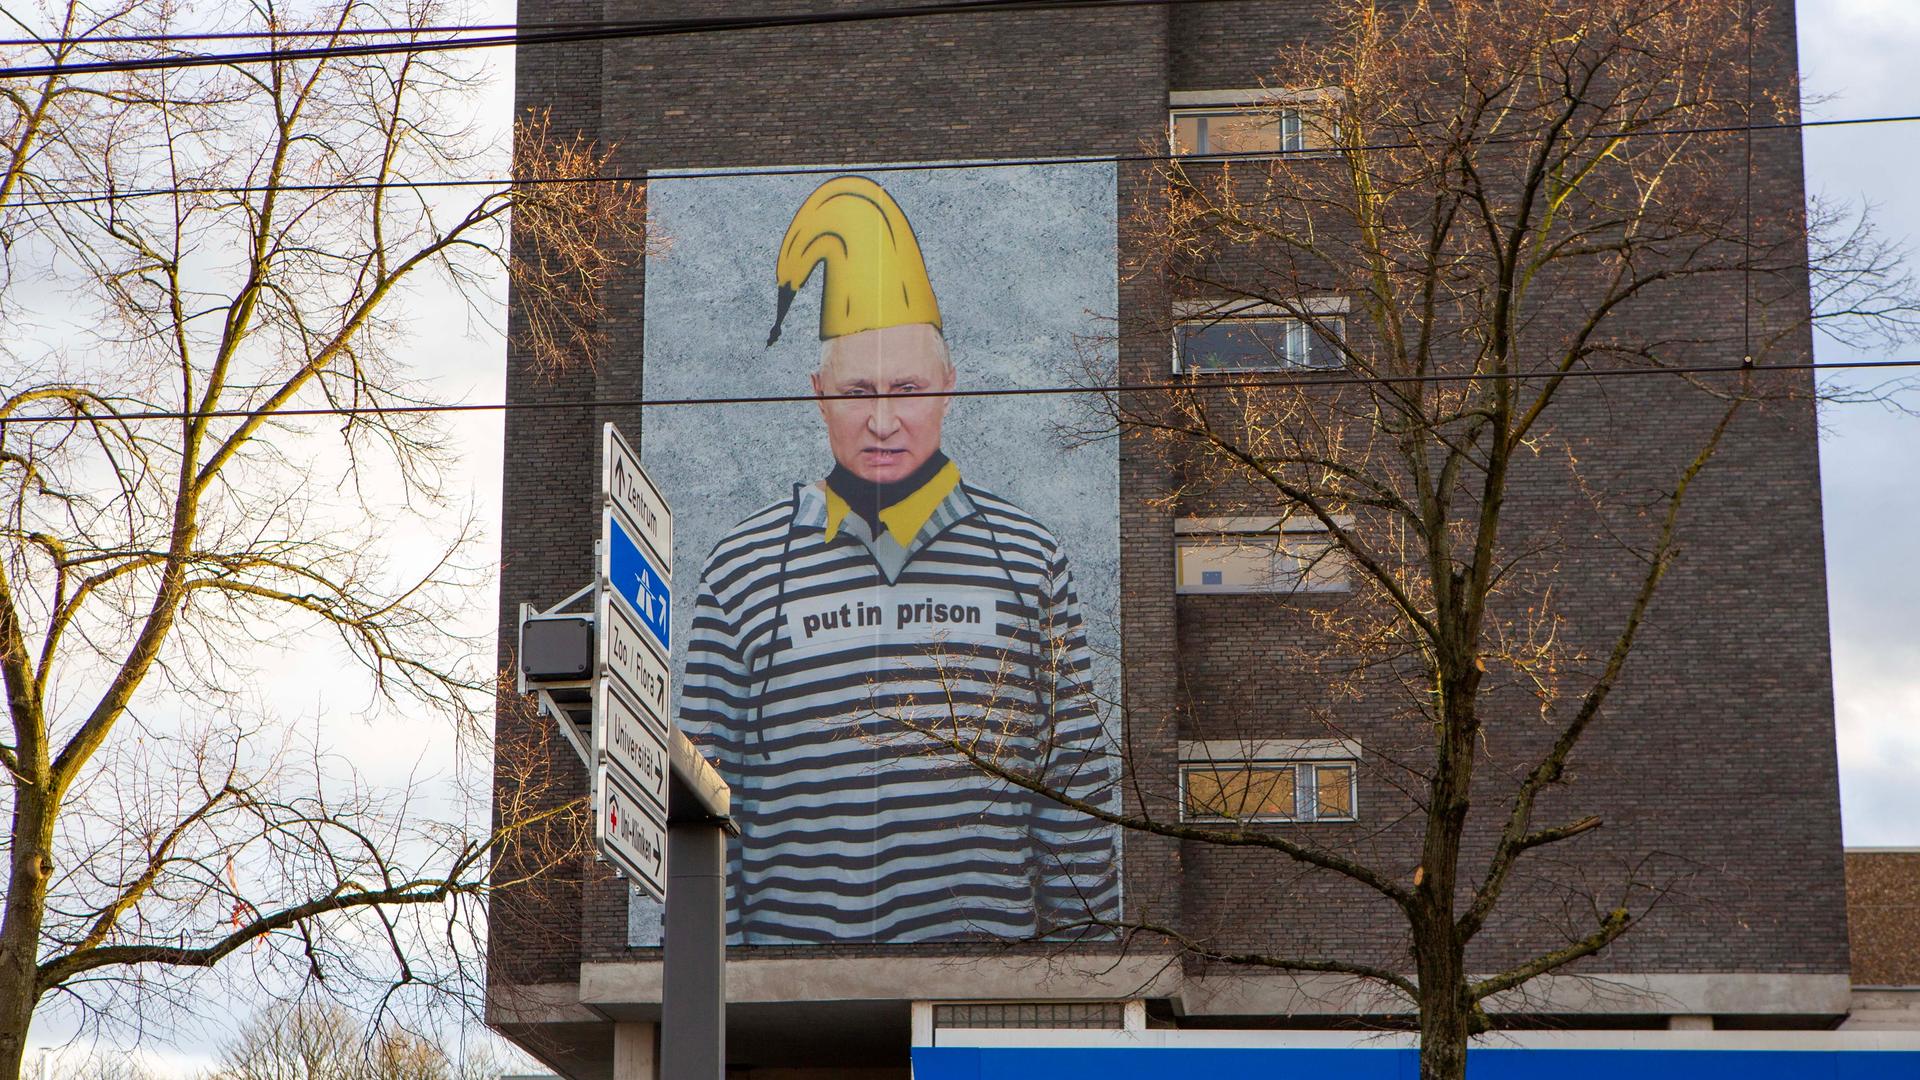 Das Bildnis des russischen Präsidenten Wladimir Putin in Häftlingskleidung ist in Übergröße auf einer Hauswand in Köln zu sehen. Der Internationale Strafgerichtshof (ICC) hat vor einem Jahr einen Haftbefehl gegen Wladimir Putin erlassen wegen der Deportation ukrainischer Kinder.